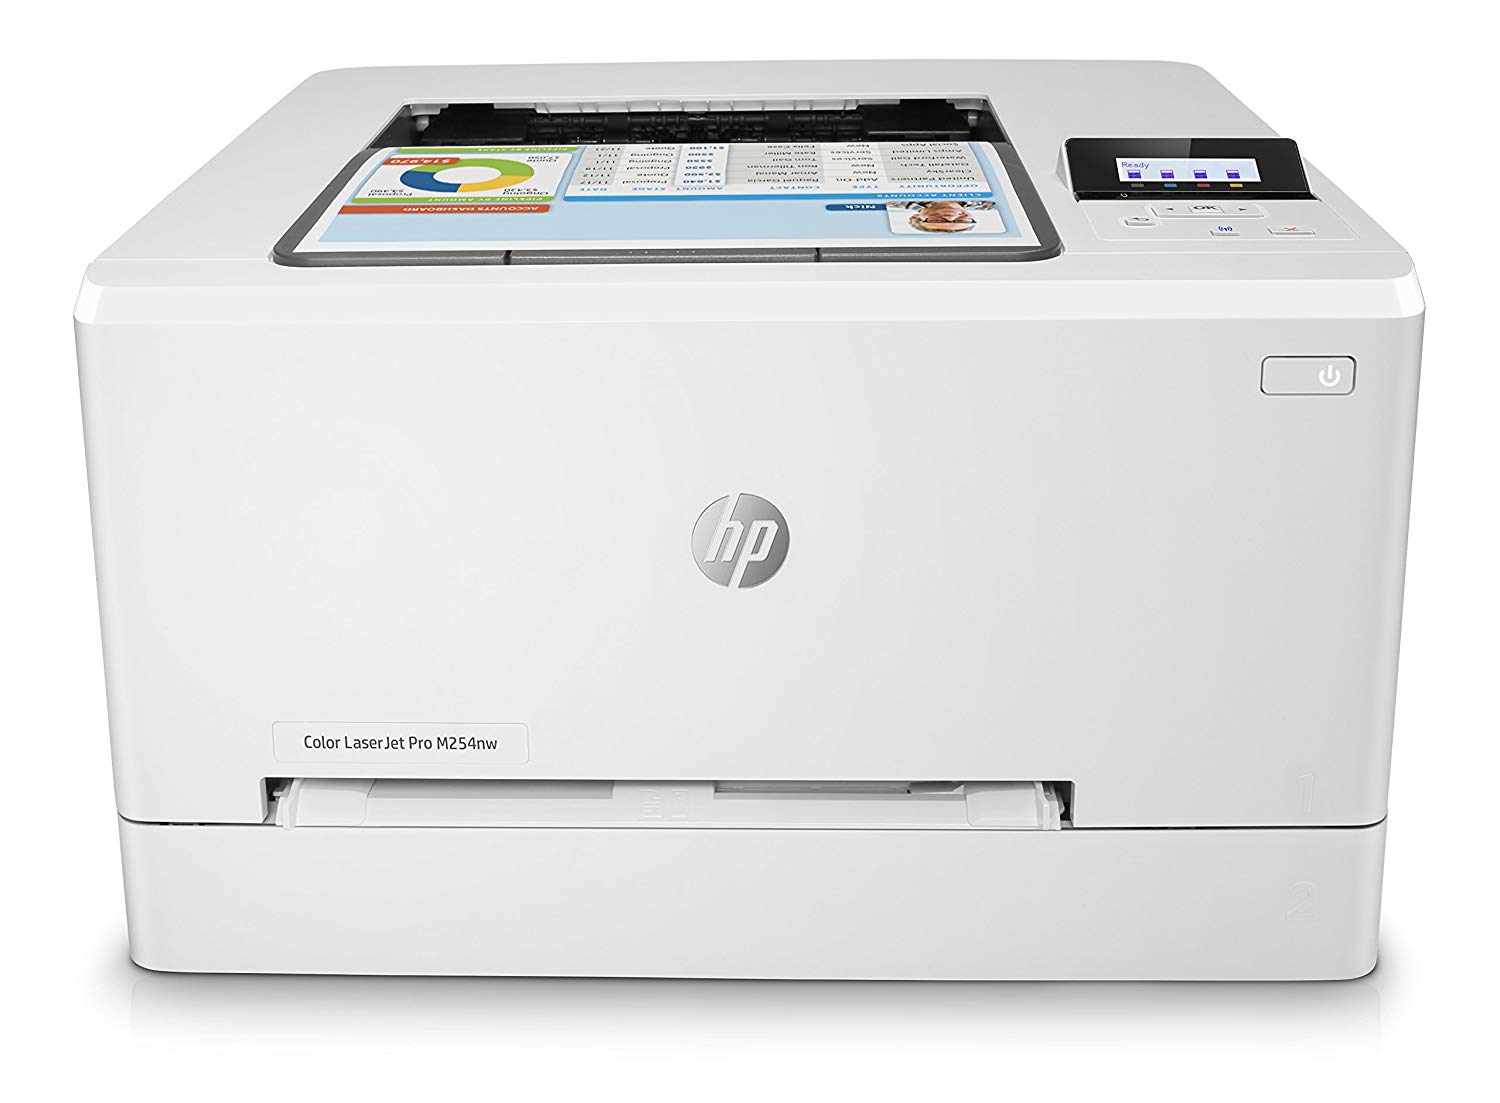 Impresora Laser a color HP solo 129€